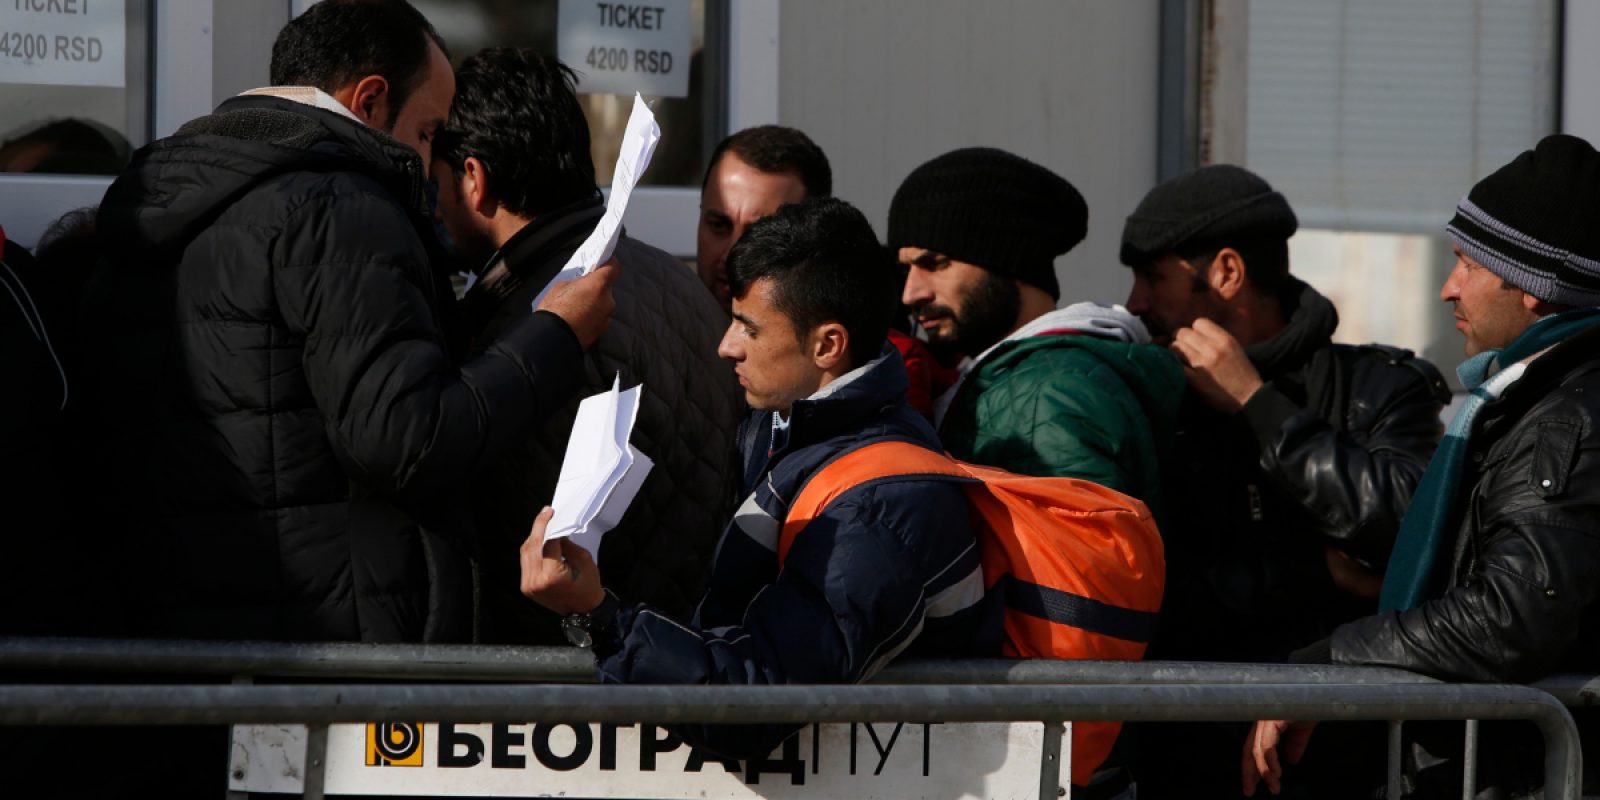 Des migrants et des réfugiés font la queue pour acheter des billets de bus afin de poursuivre leur voyage vers l'Europe de l'Ouest depuis la frontière entre la Macédoine et la Serbie. (Darrin Zammit Lupi / Service Jésuite des Réfugiés)